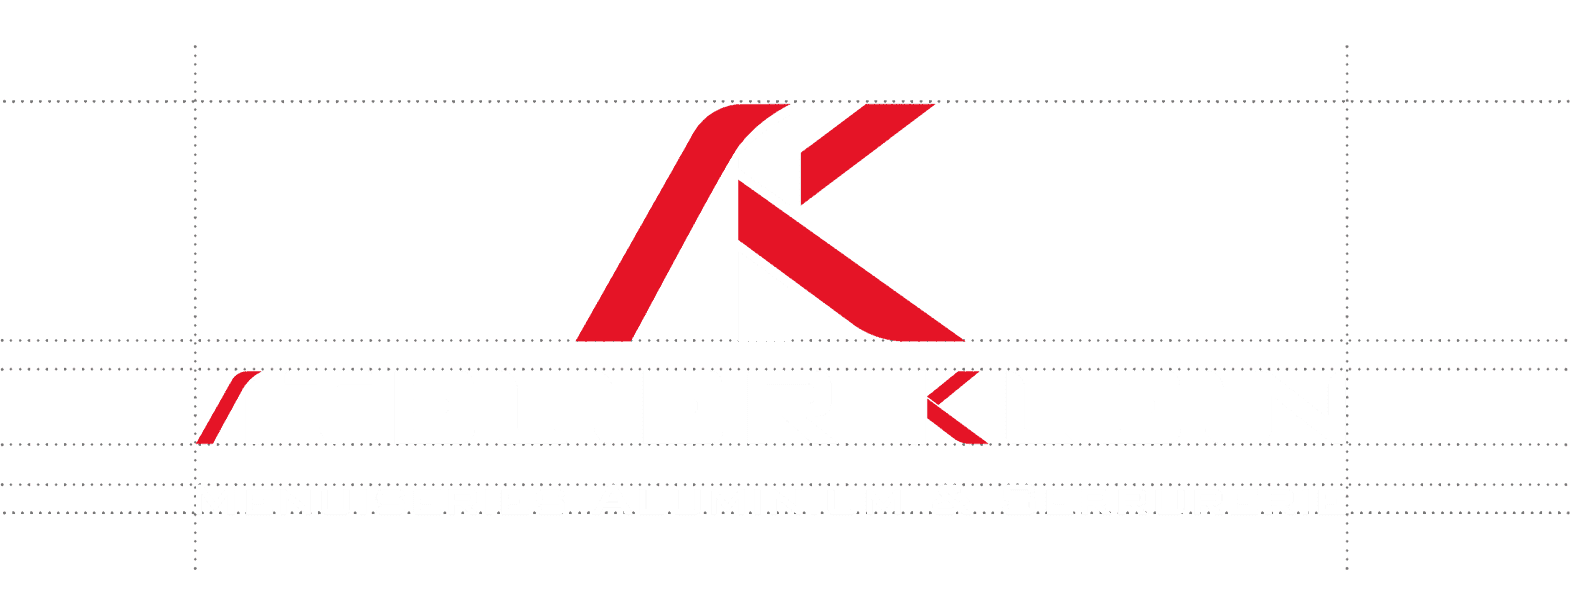 Atelier Klein
.Spécialisée dans la fabrication de menuiserie aluminium, l'entreprise Atelier Klein a fait appel à Evok pour réaliser sa charte graphique.